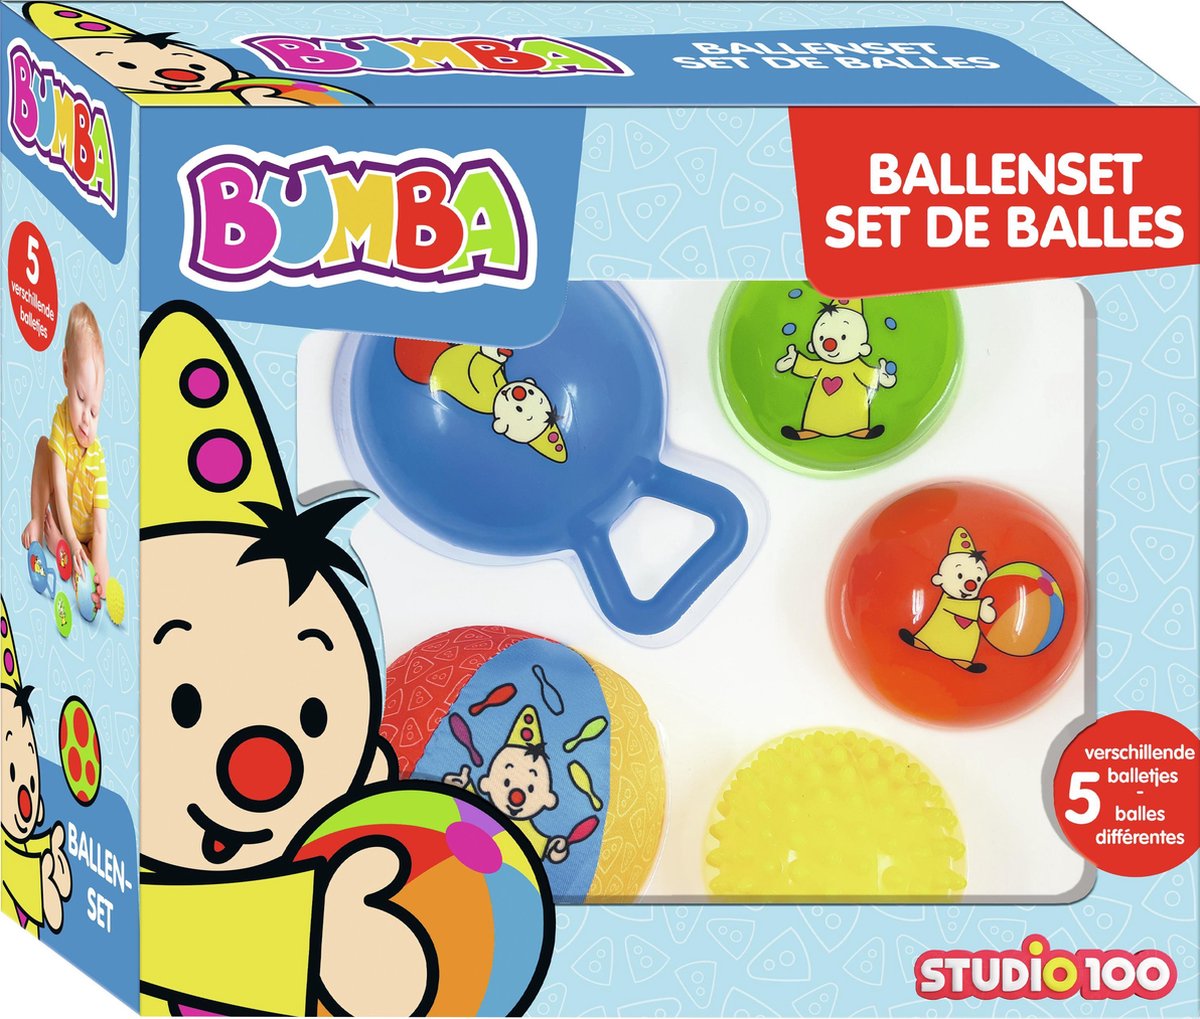 Bumba speelgoedbal - set van balletjes - 5 verschillende balletjes | bol.com